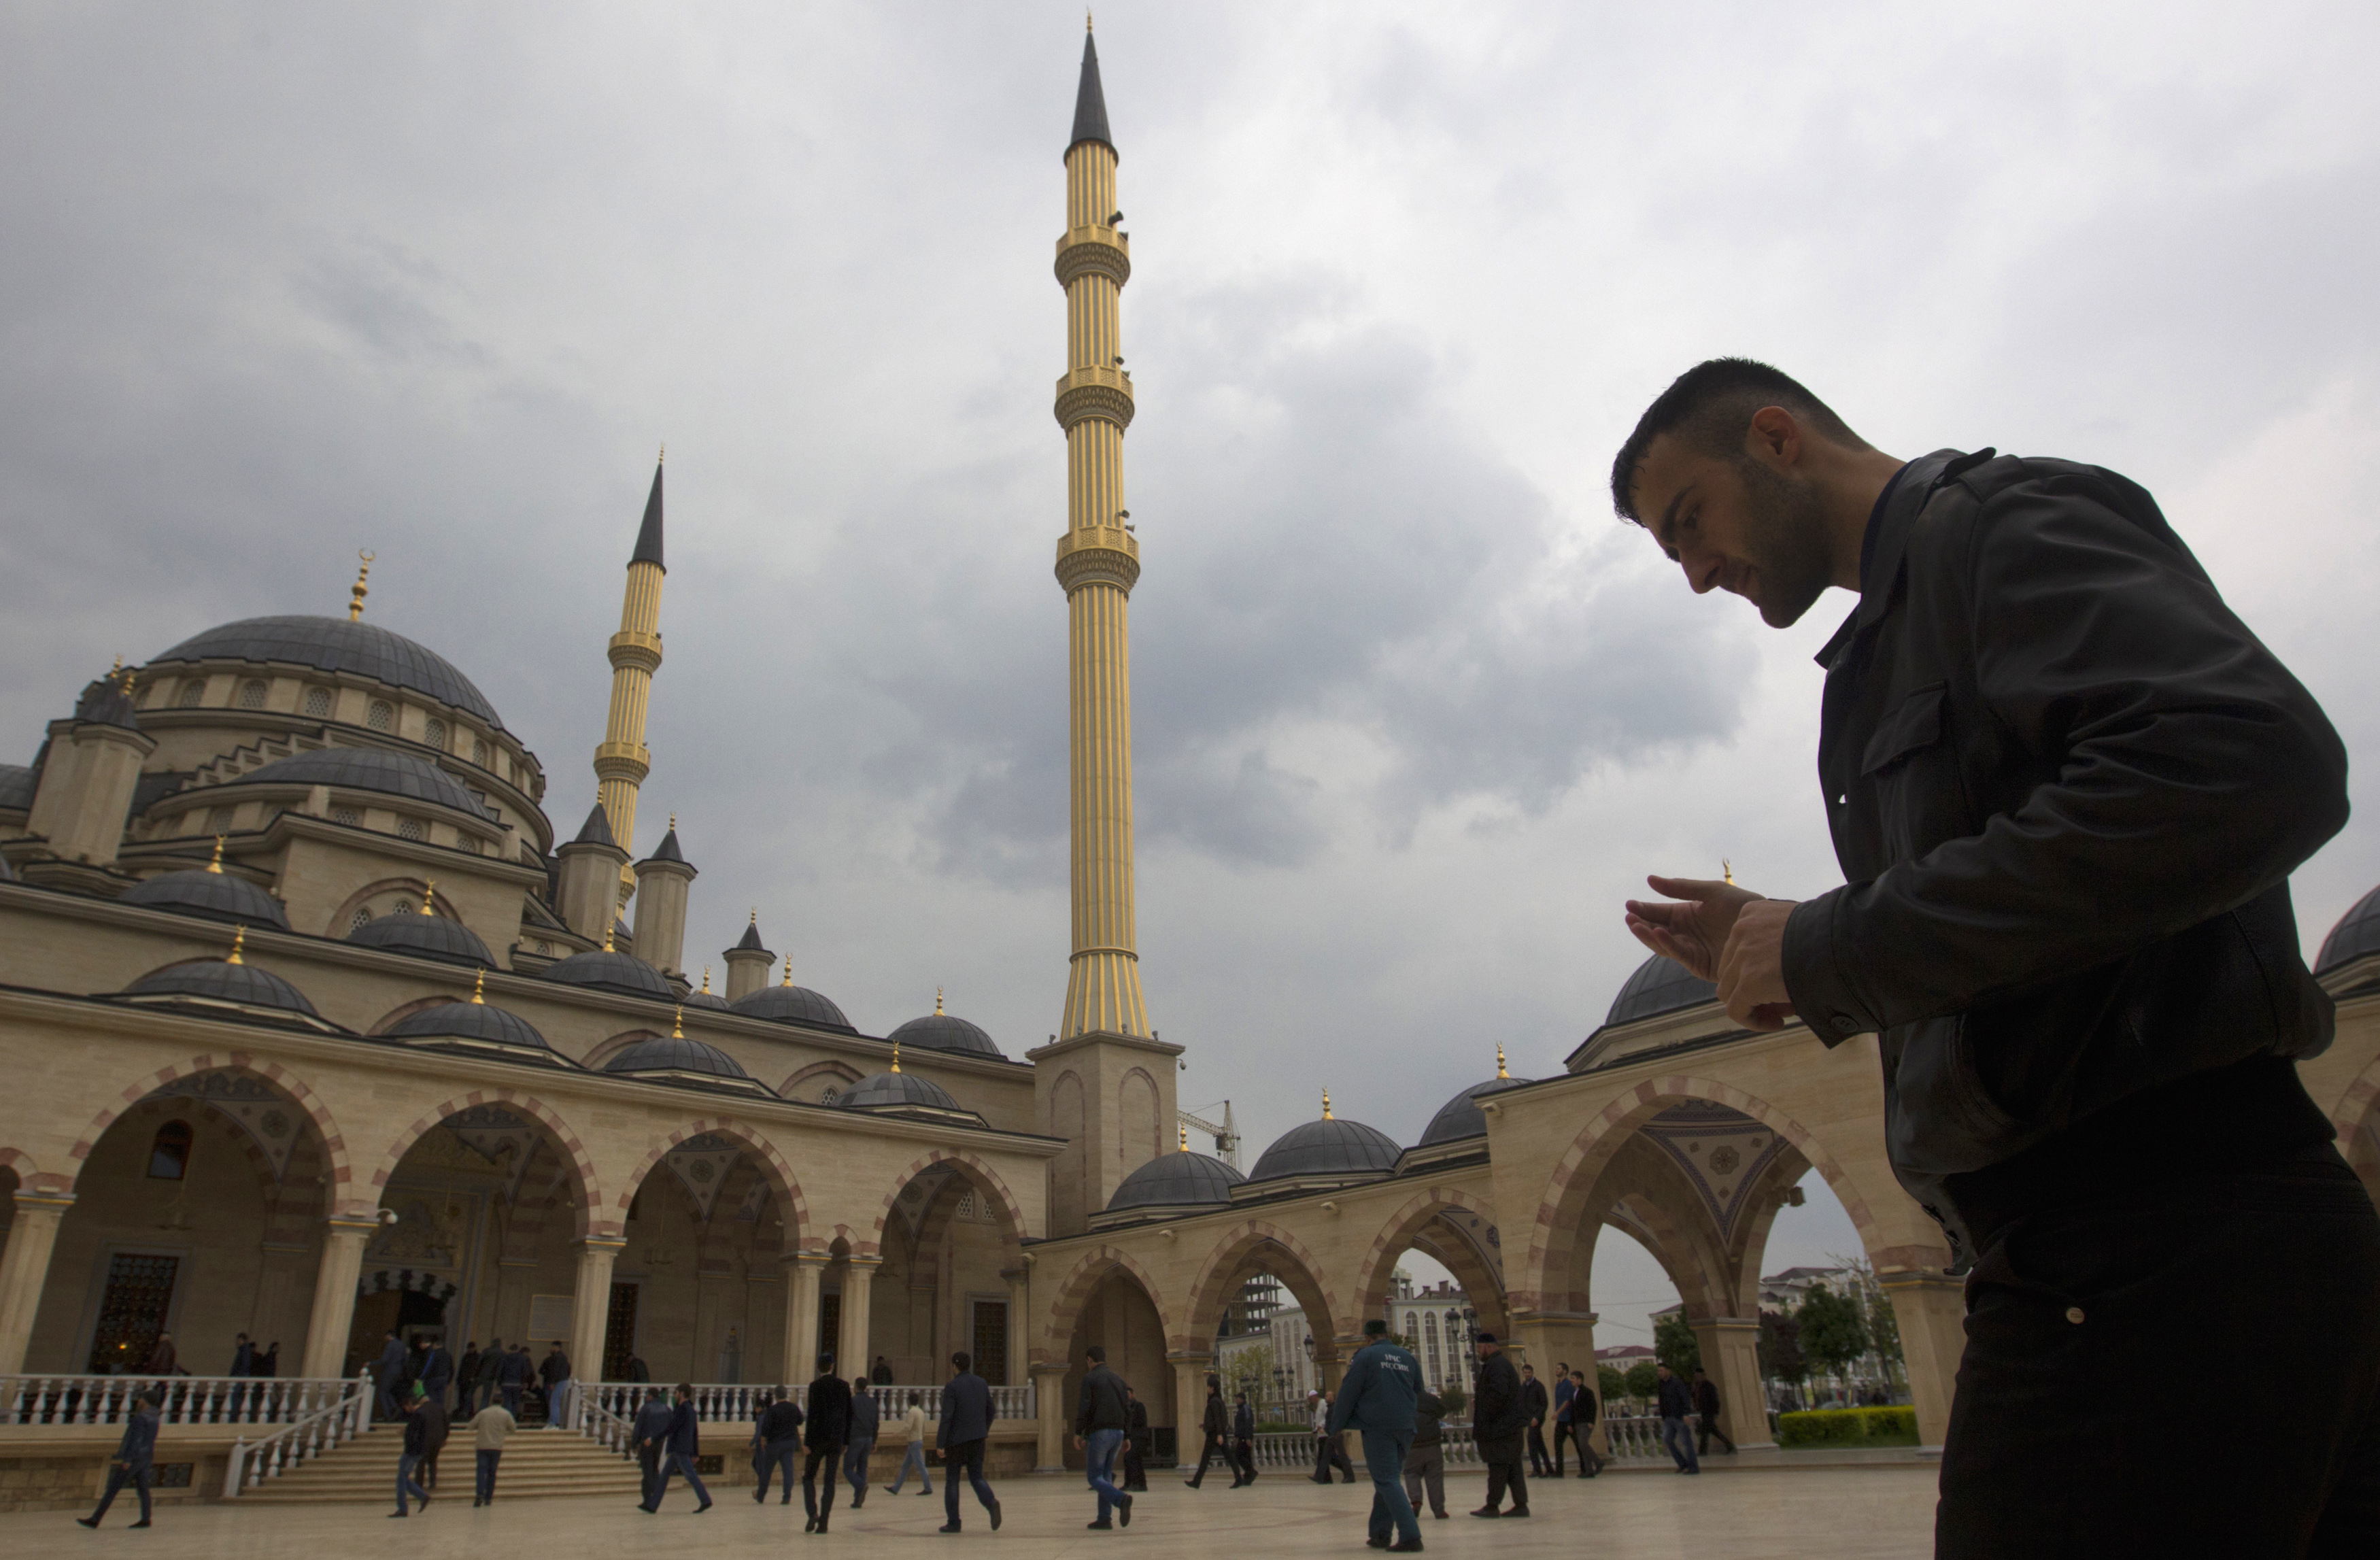 10. Единствената джамия в Русия с видео стрийминг на живо (24/7 онлайн излъчване). Джамията „Сърцето на Чечения“, кръстена на първия президент на Чеченската република Ахмат Кадиров, е построена в турски стил и наподобява „Синята джамия“ в Истанбул. „Сърцето на Чечня“ е оборудвана и с уеб камери, поставени пред джамията, които предават на живо 24 часа в денонощието.